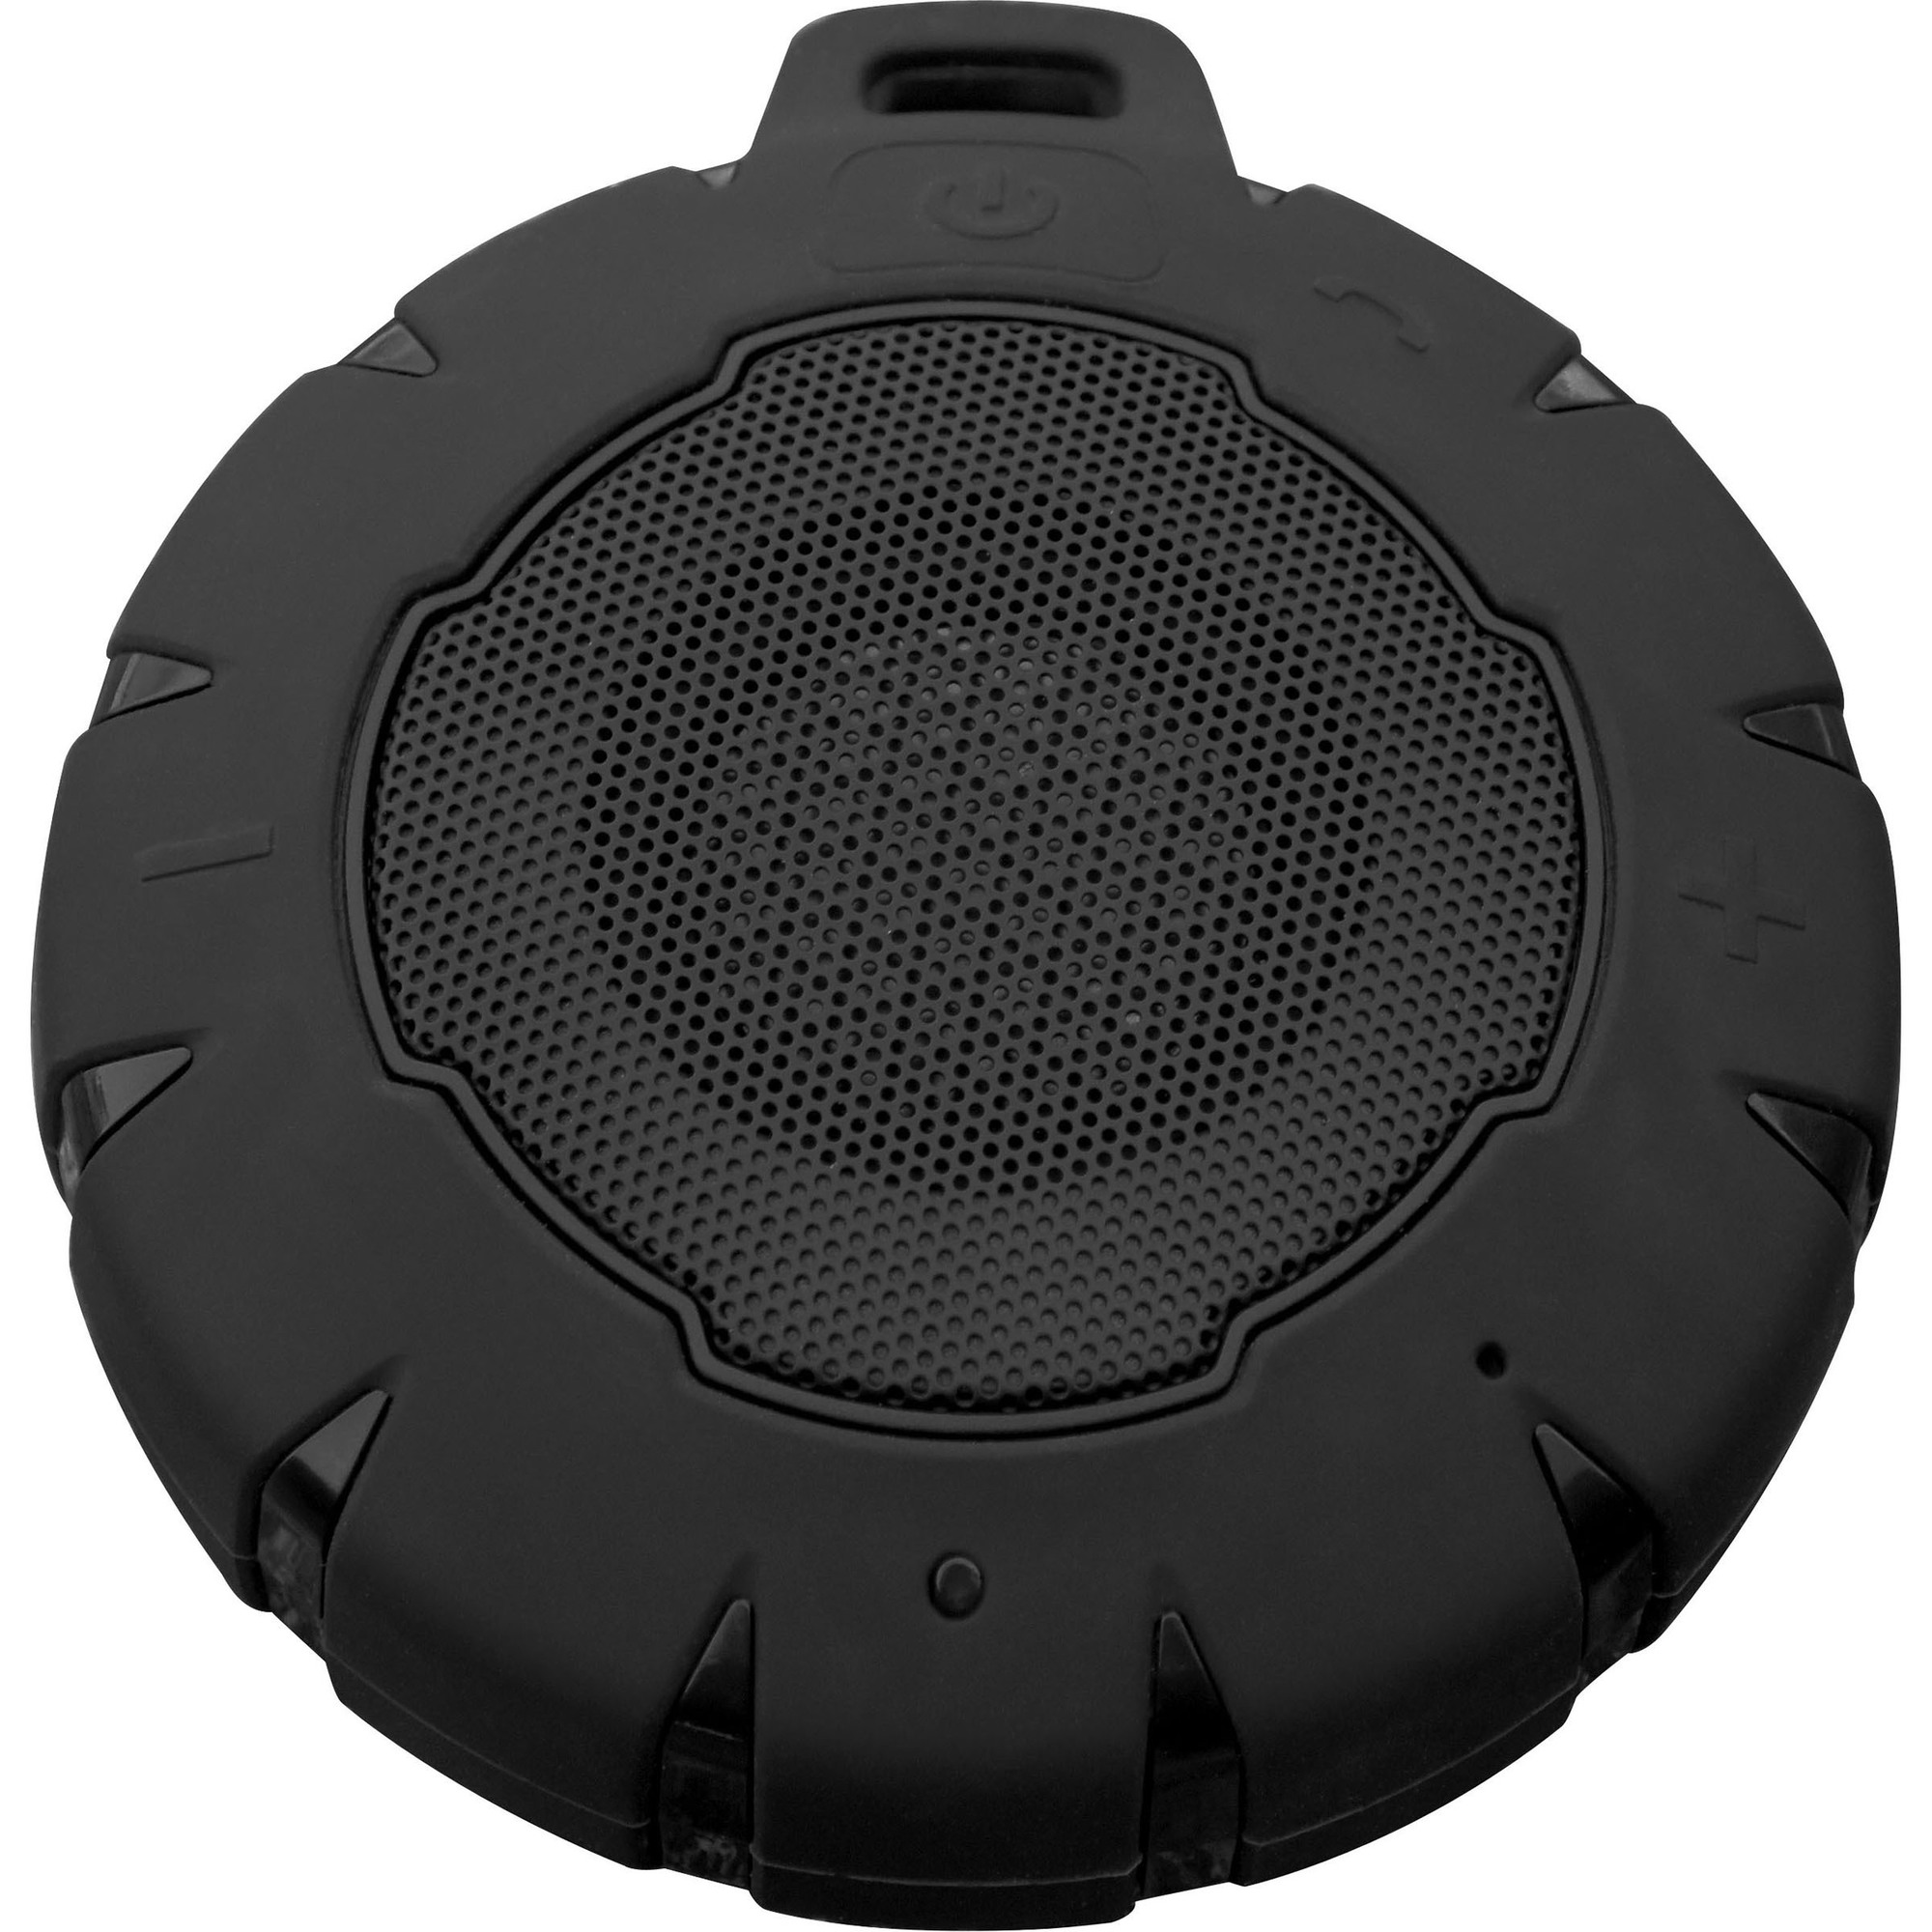 Sportsman Series, Wireless Bluetooth Water Resistant Speaker, Model SPEAKERX7